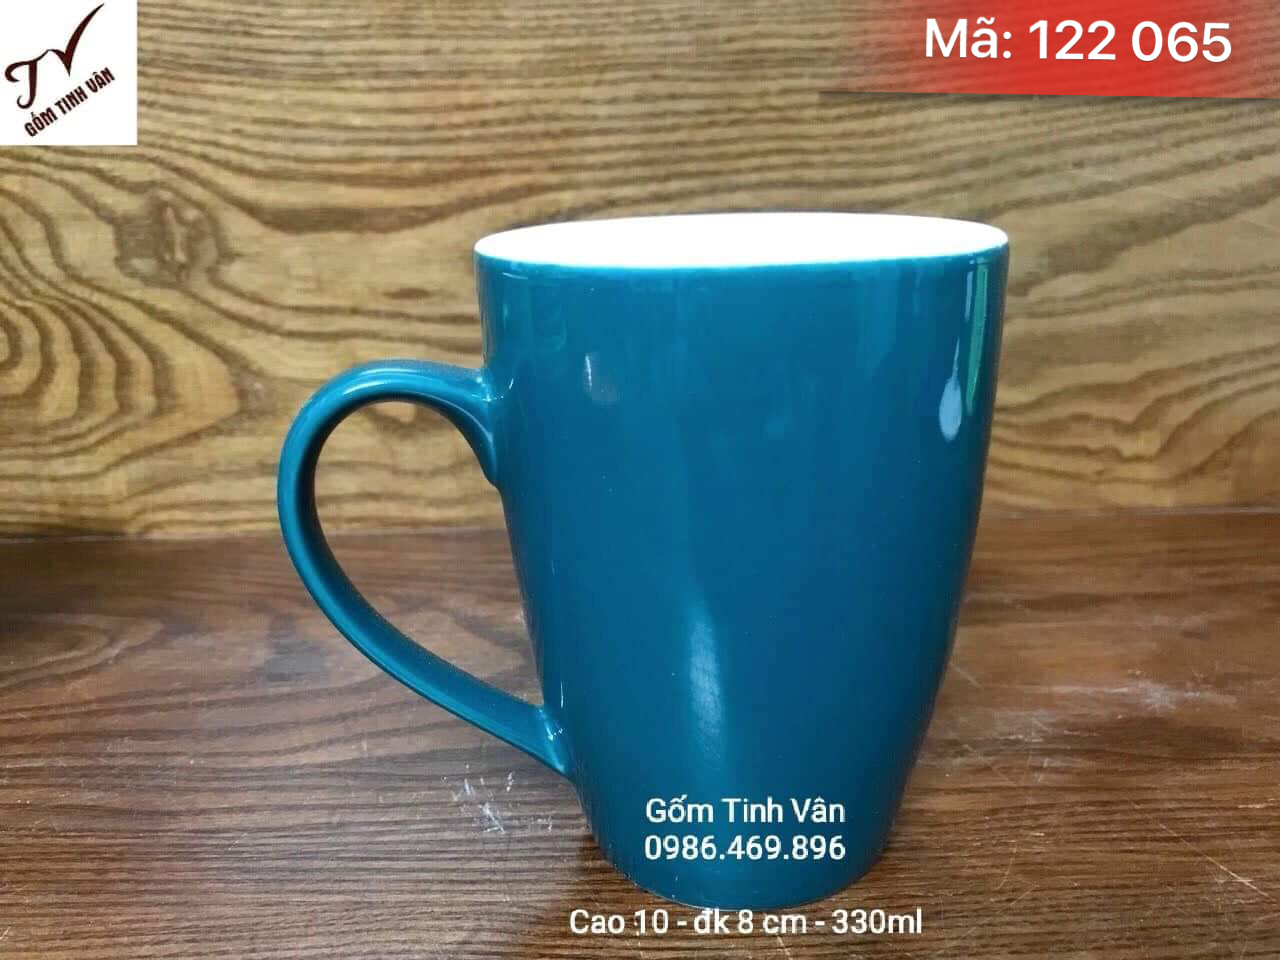 Ly sứ men xanh, mã 122065, cao 10, đk 8 cm, 330ml, cốc cafe, trà lipton, in logo, gốm sứ bát tràng, tinh vân